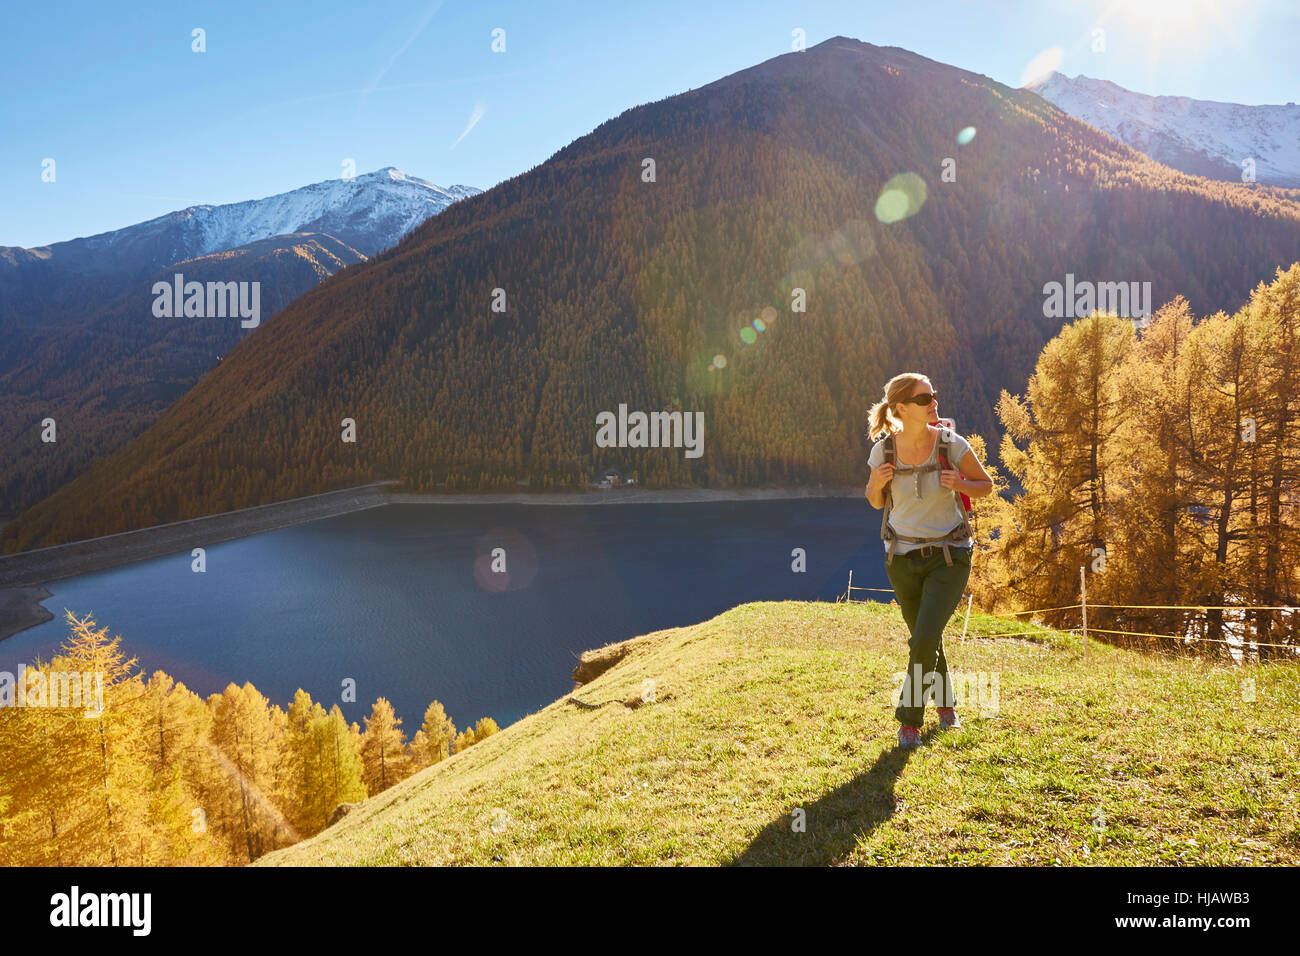 Woman Hiking, guardando a vista, Val Senales Alto Adige - Italia Foto Stock